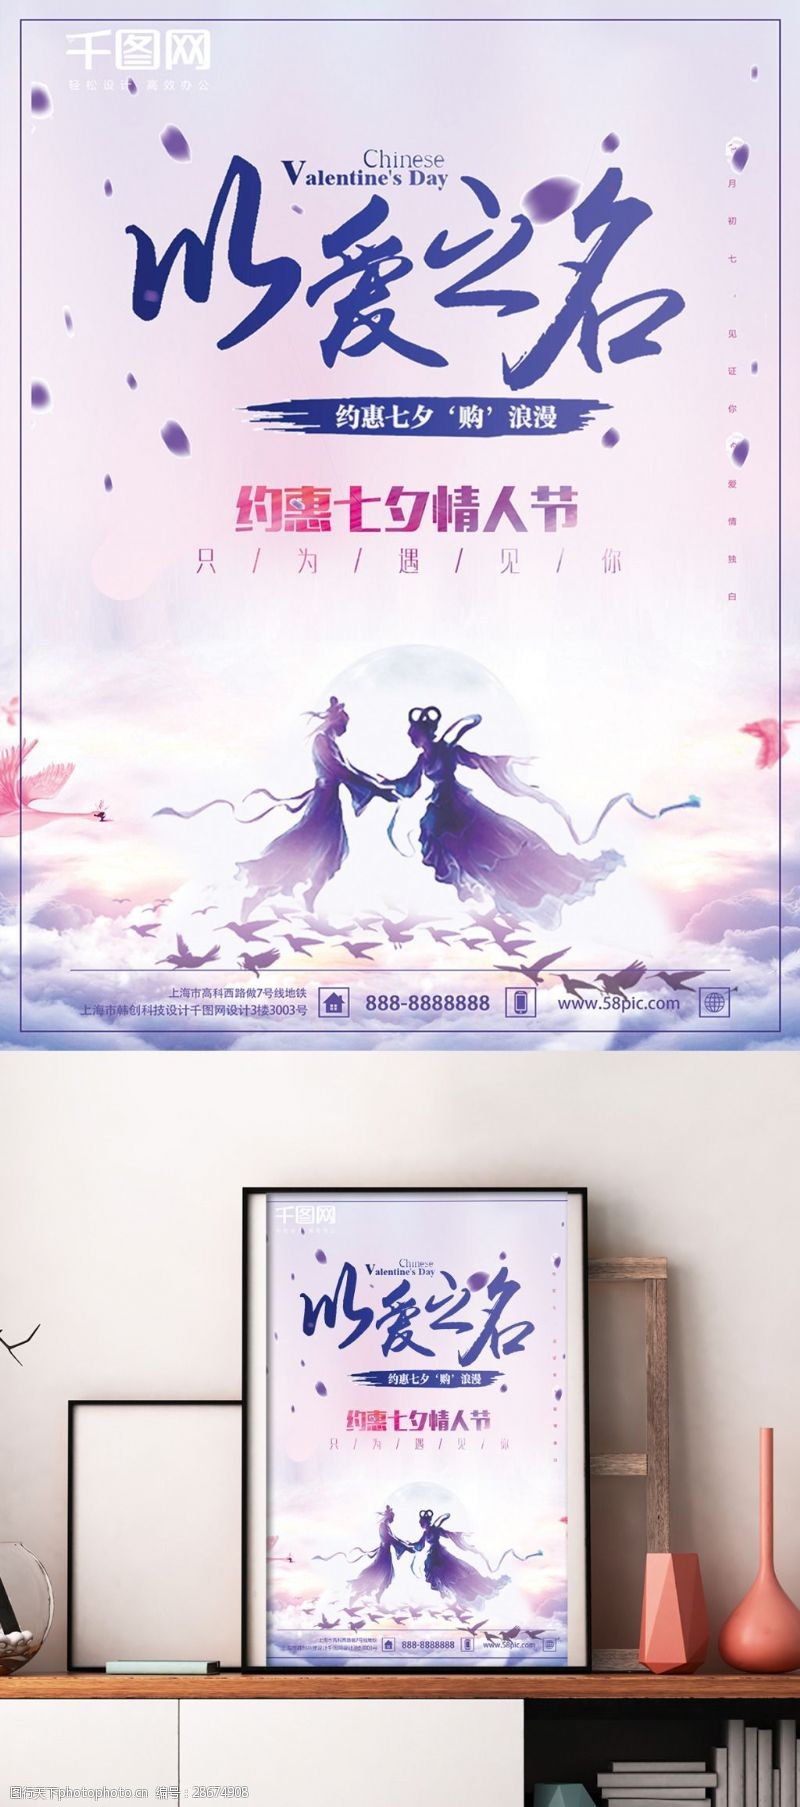 以爱之名紫色唯美浪漫七夕情人节促销海报设计图片